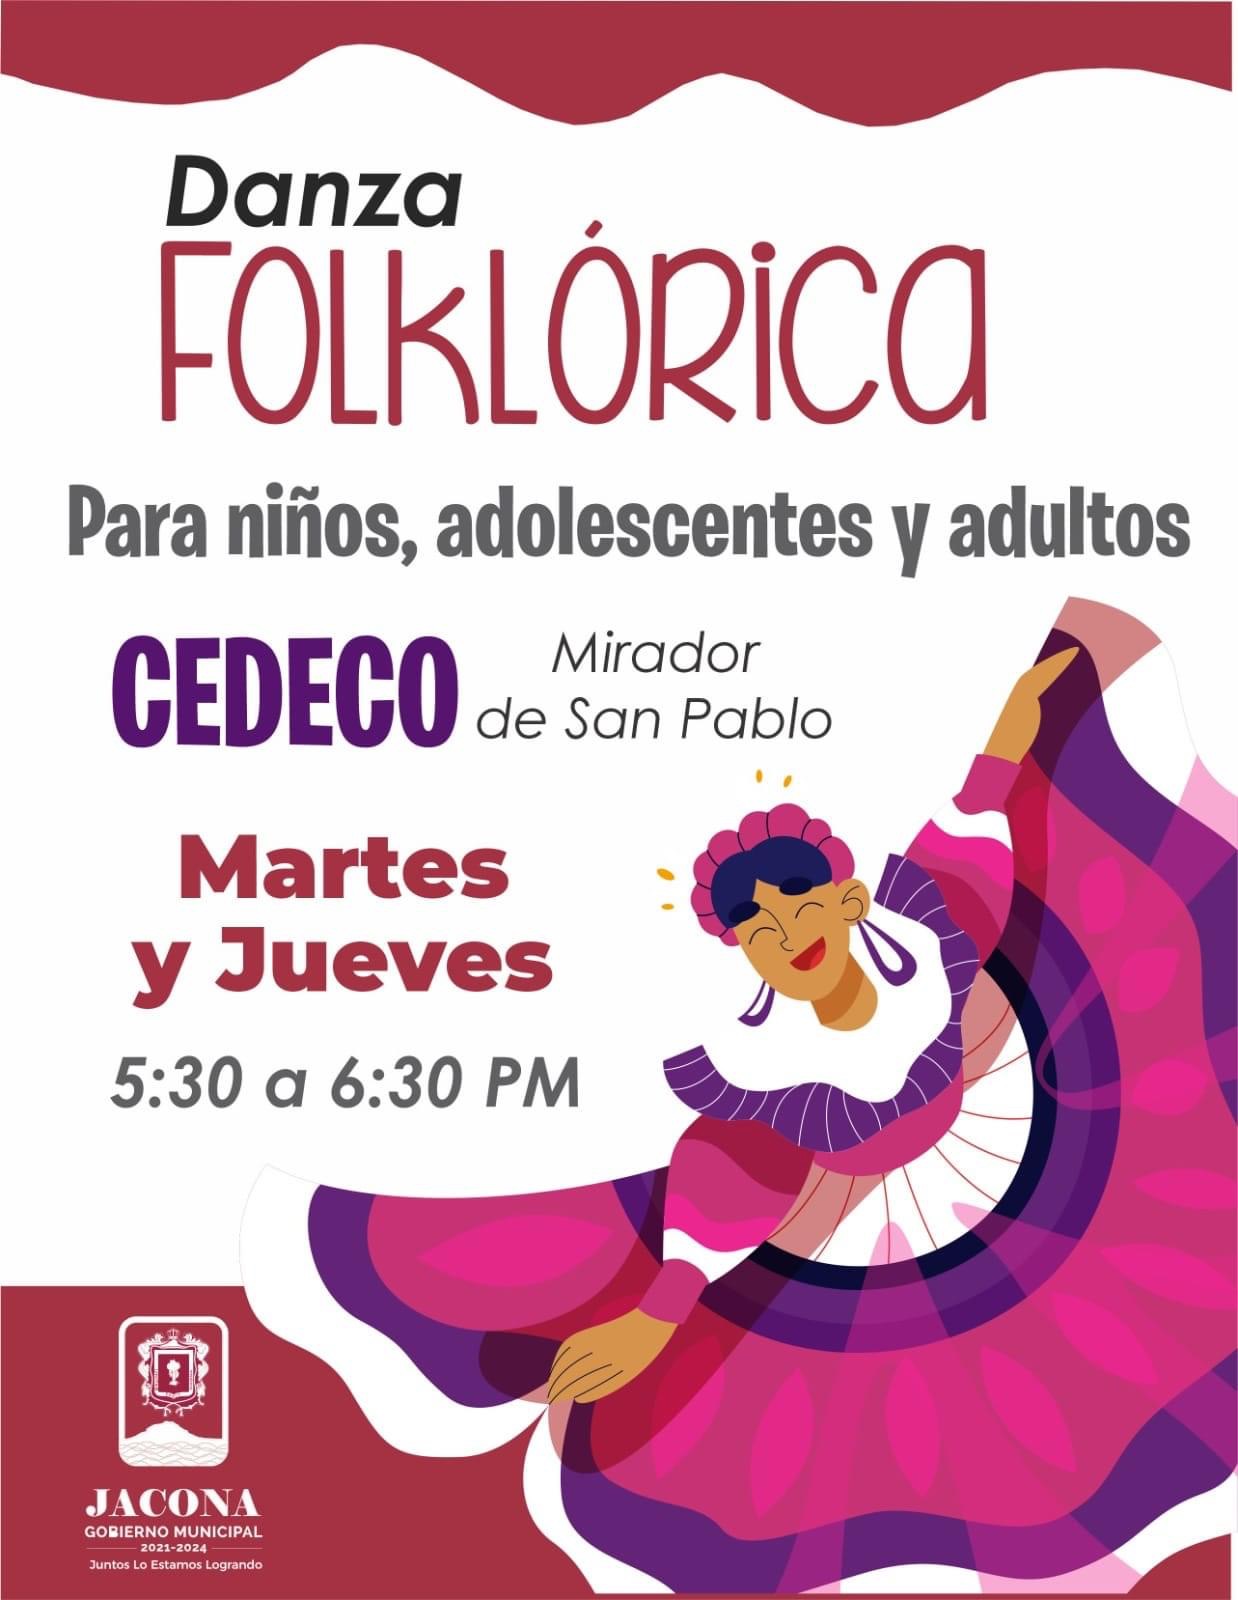 Gobierno de Jacona invita a formar parte del Taller de danza folclórica a realizar en el CEDECO